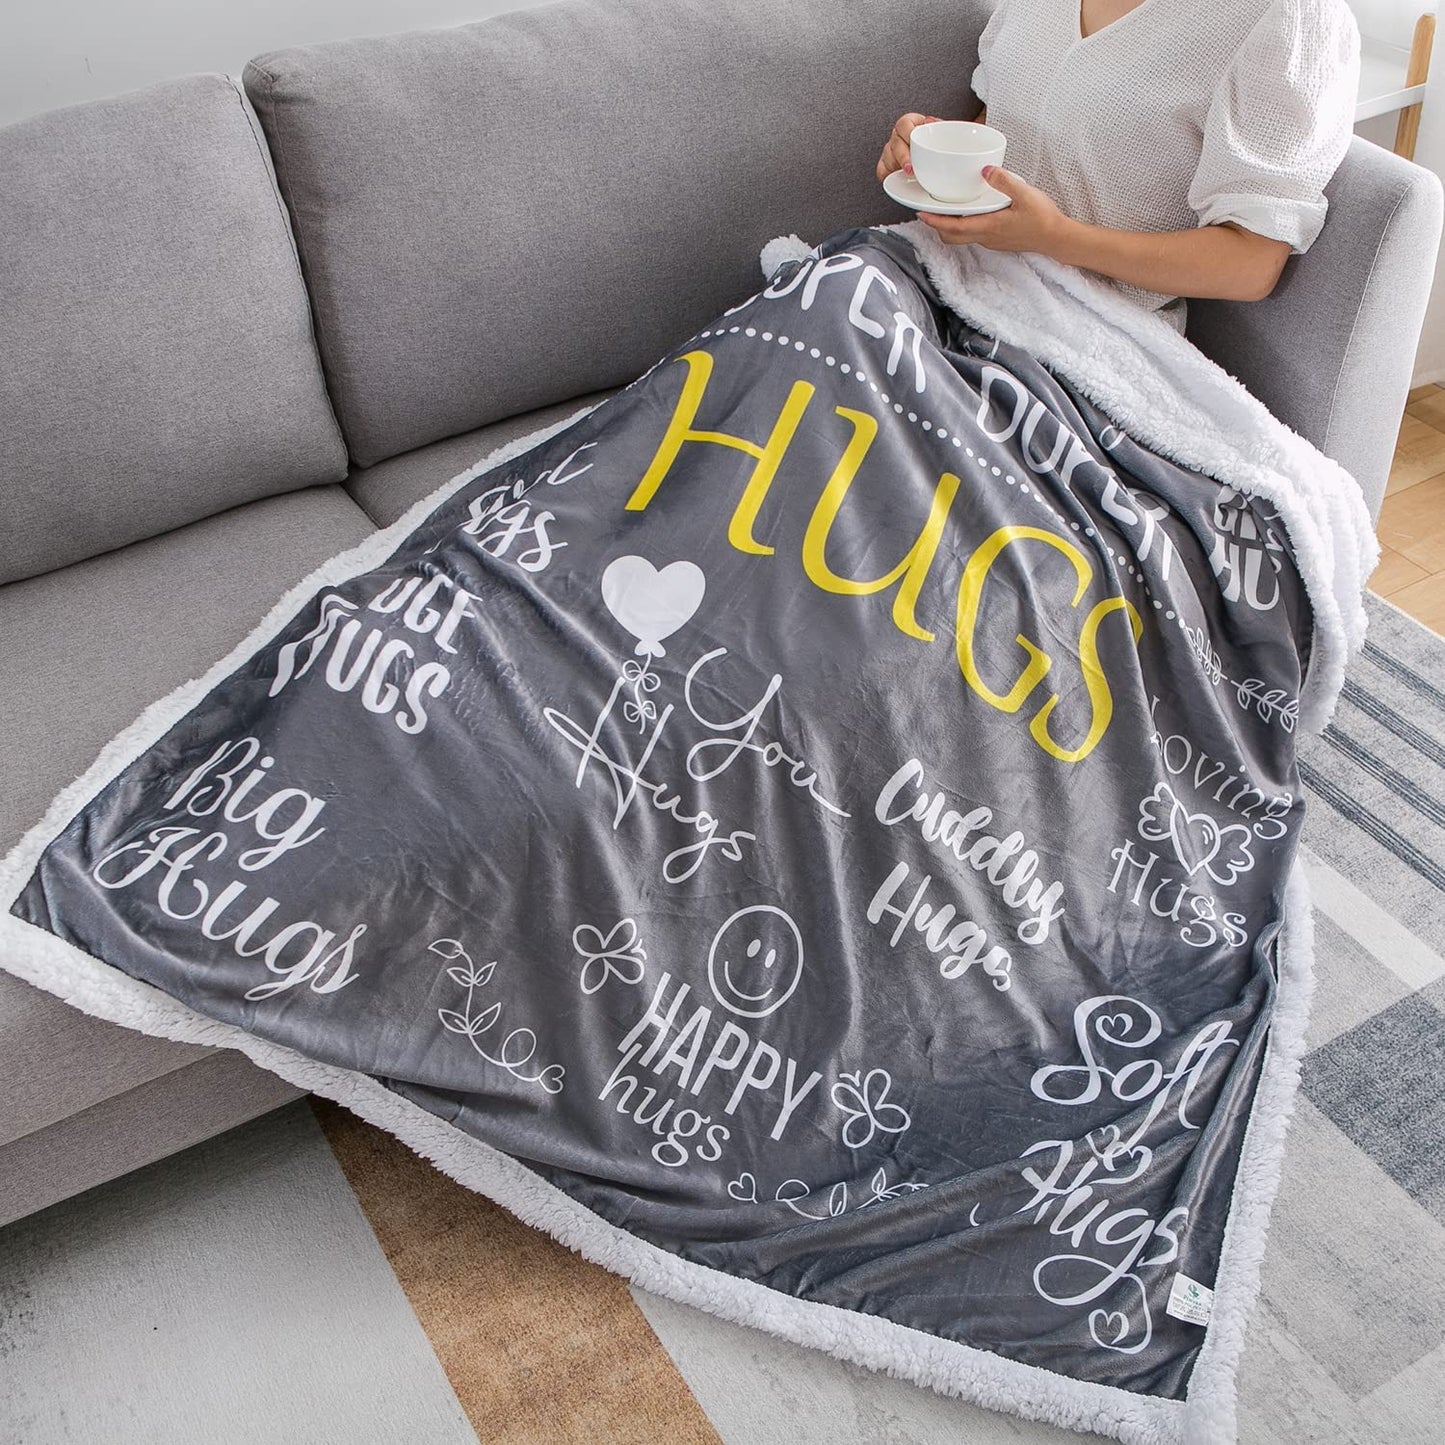 Hug Blanket Throw - Snuggly Soft Fleece Blanket Gift for Loved One